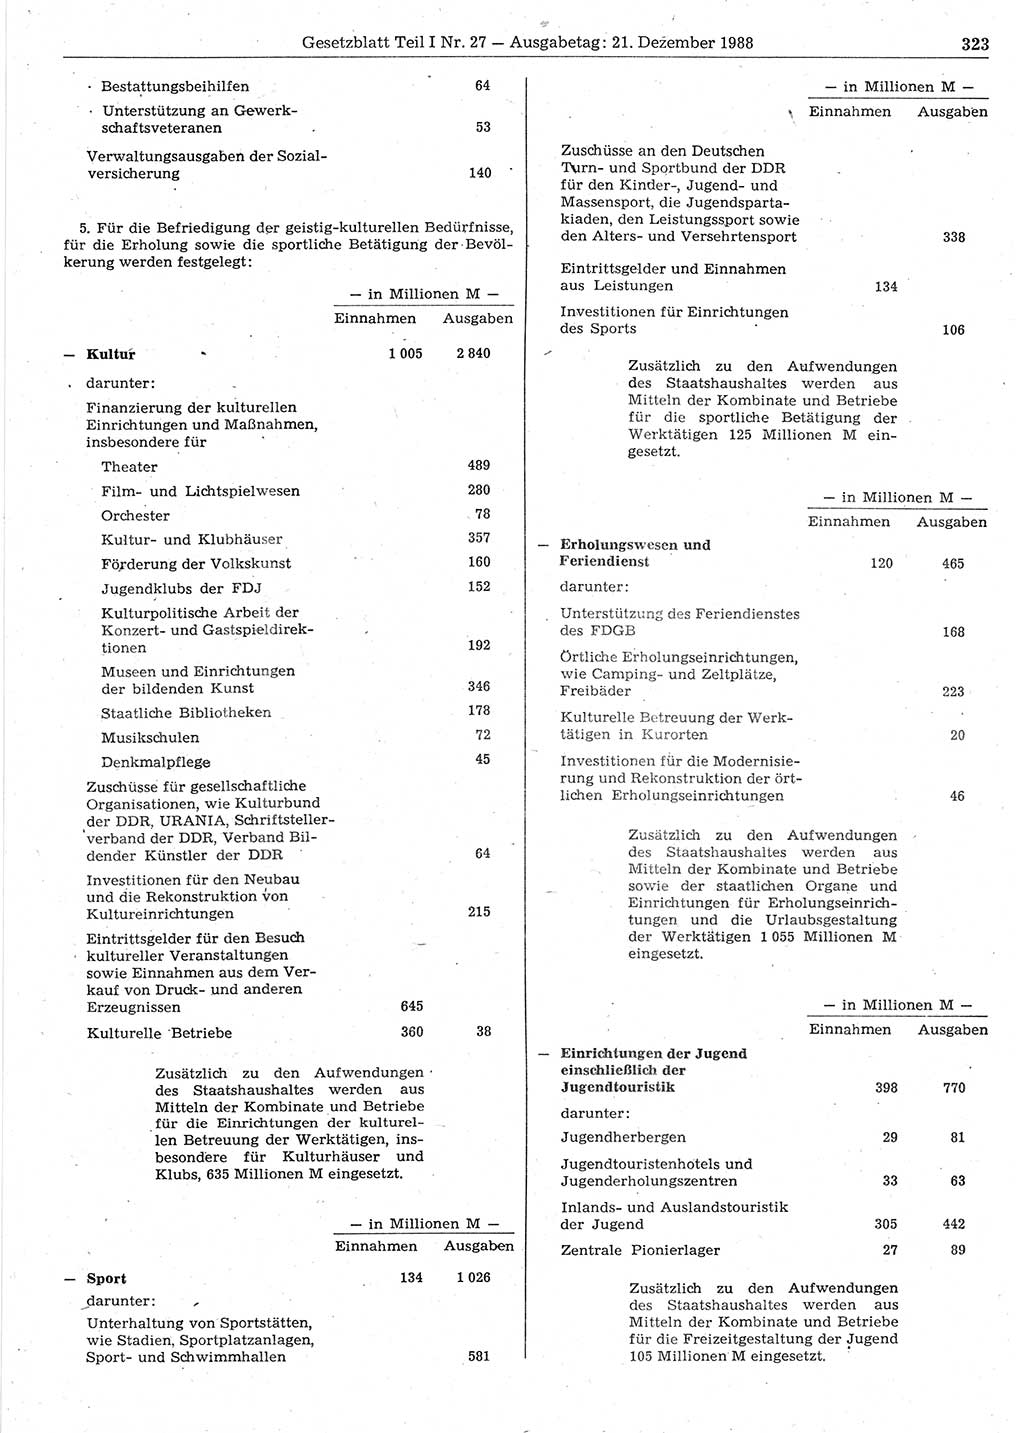 Gesetzblatt (GBl.) der Deutschen Demokratischen Republik (DDR) Teil Ⅰ 1988, Seite 323 (GBl. DDR Ⅰ 1988, S. 323)